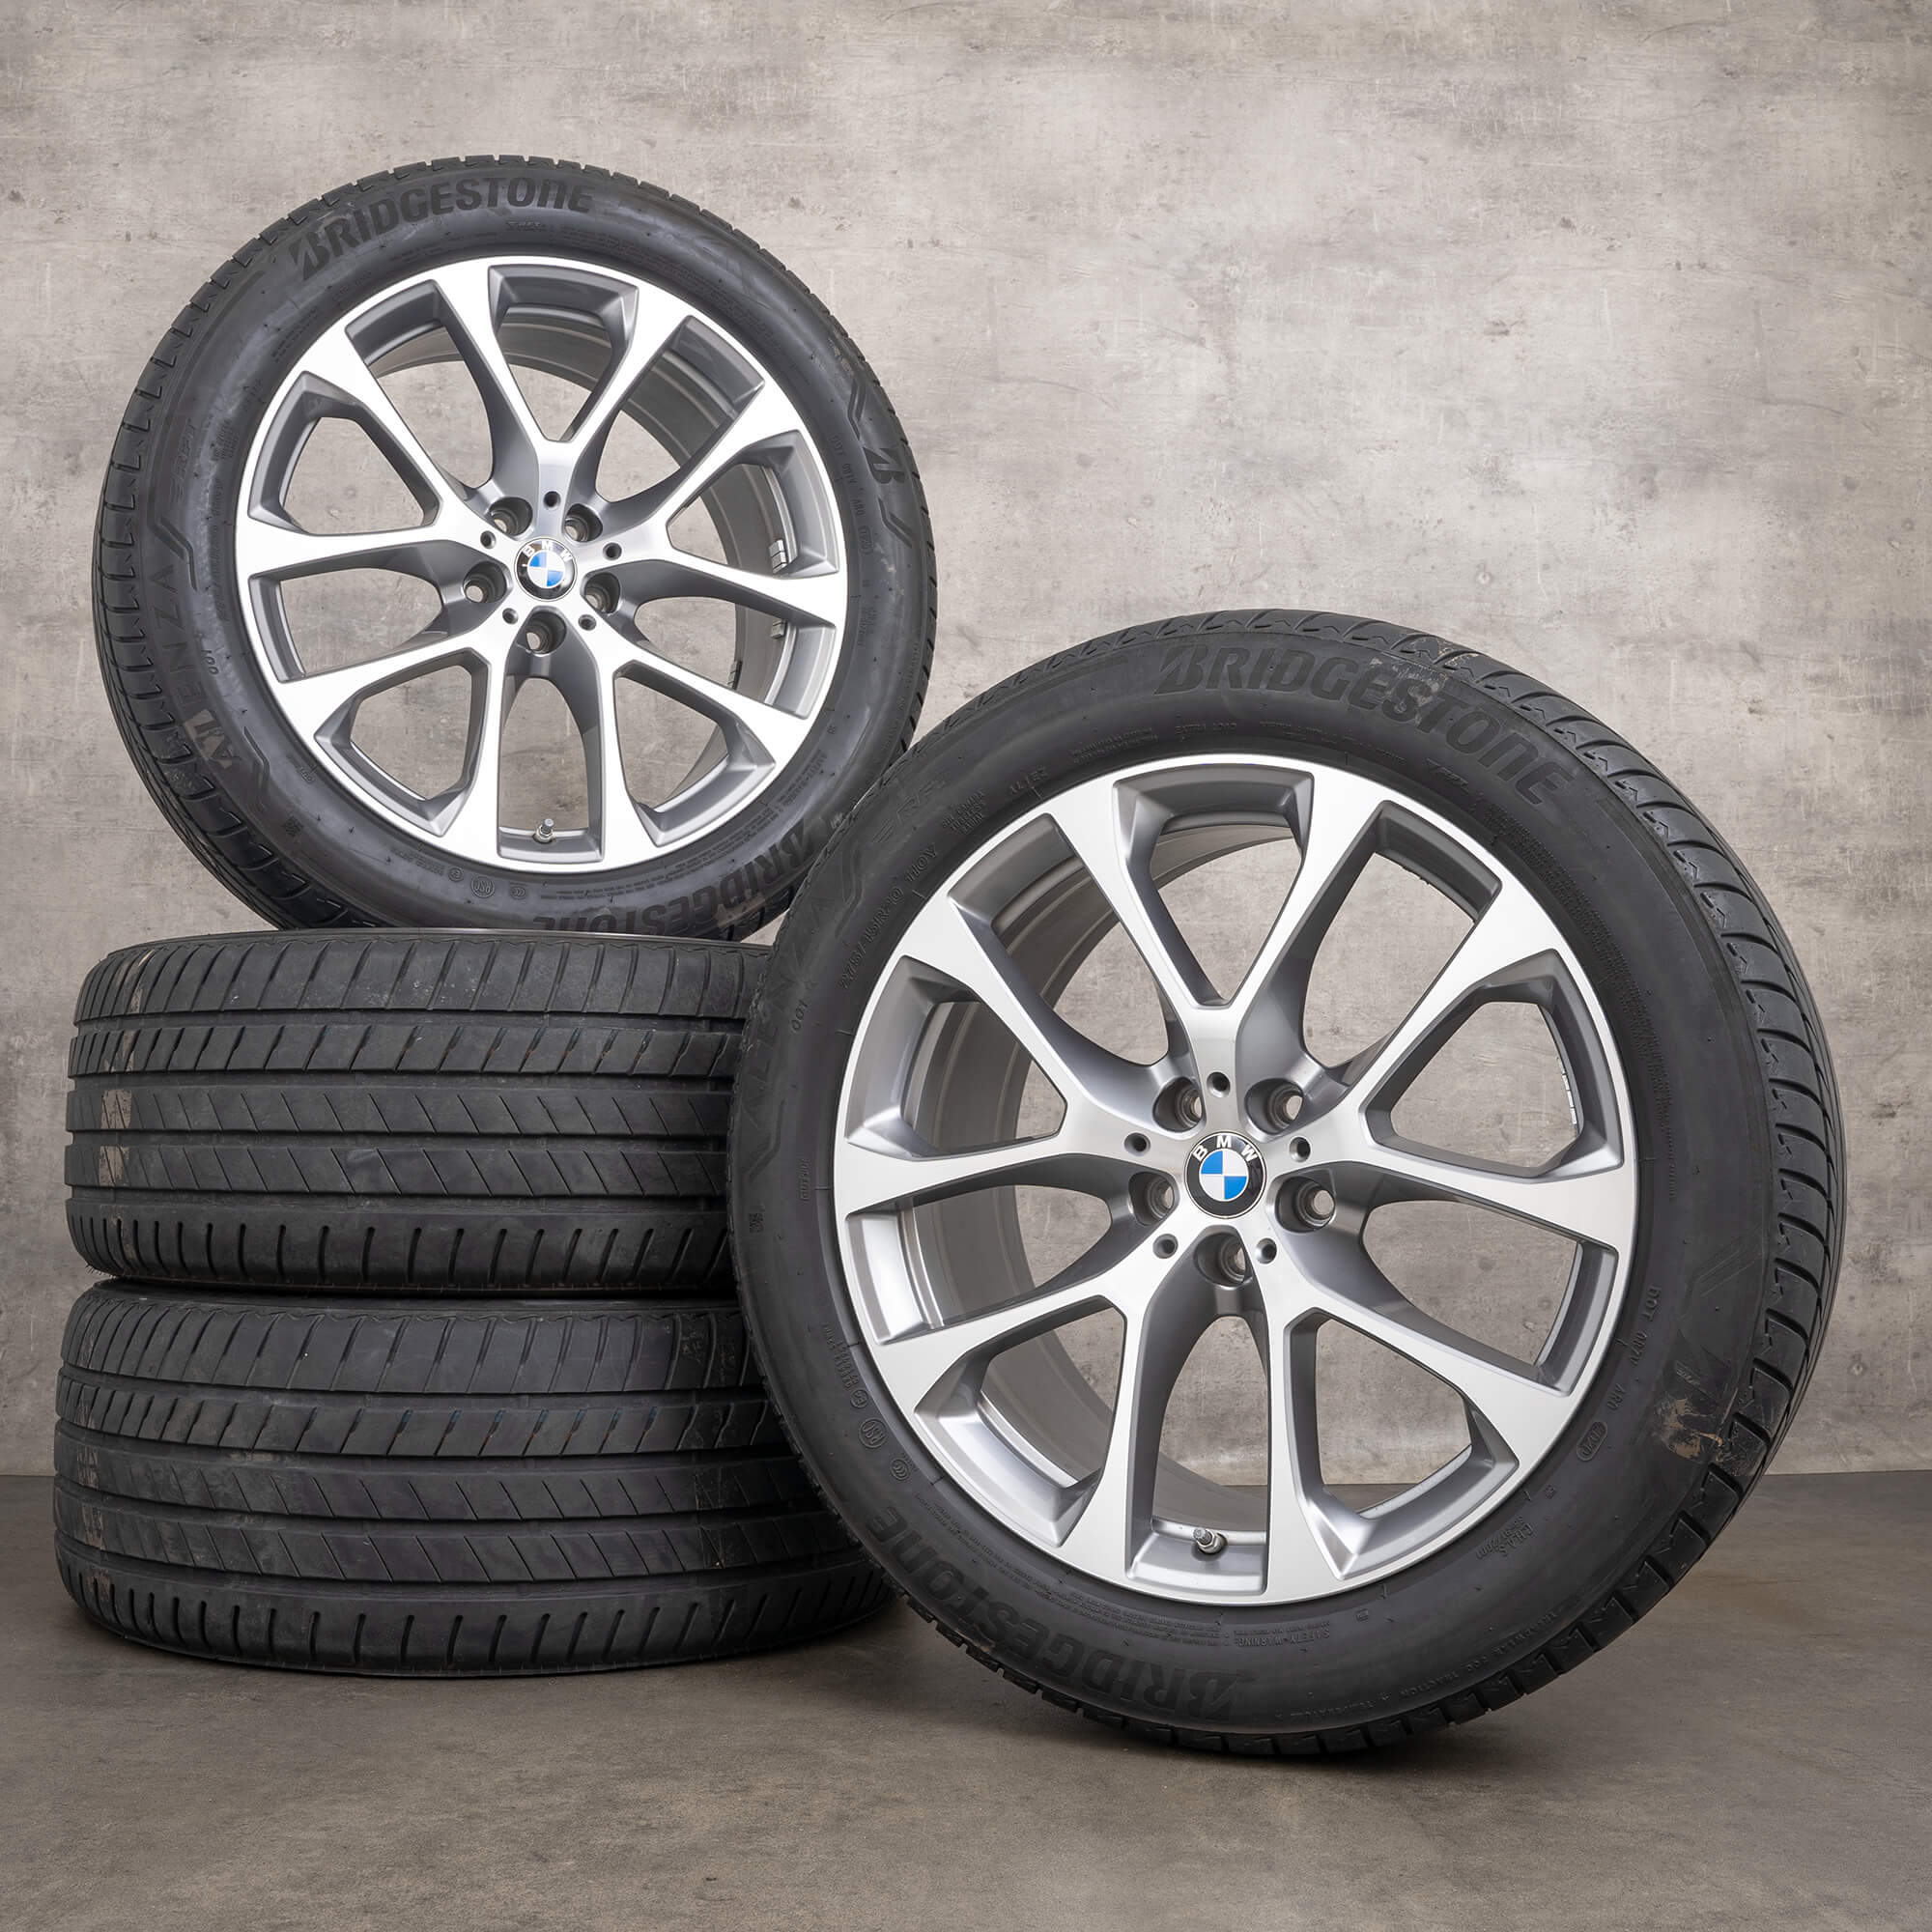 BMW X5 G05 X6 G06 pneus de verão rodas jantes 20 polegadas 738 6883757 6883758